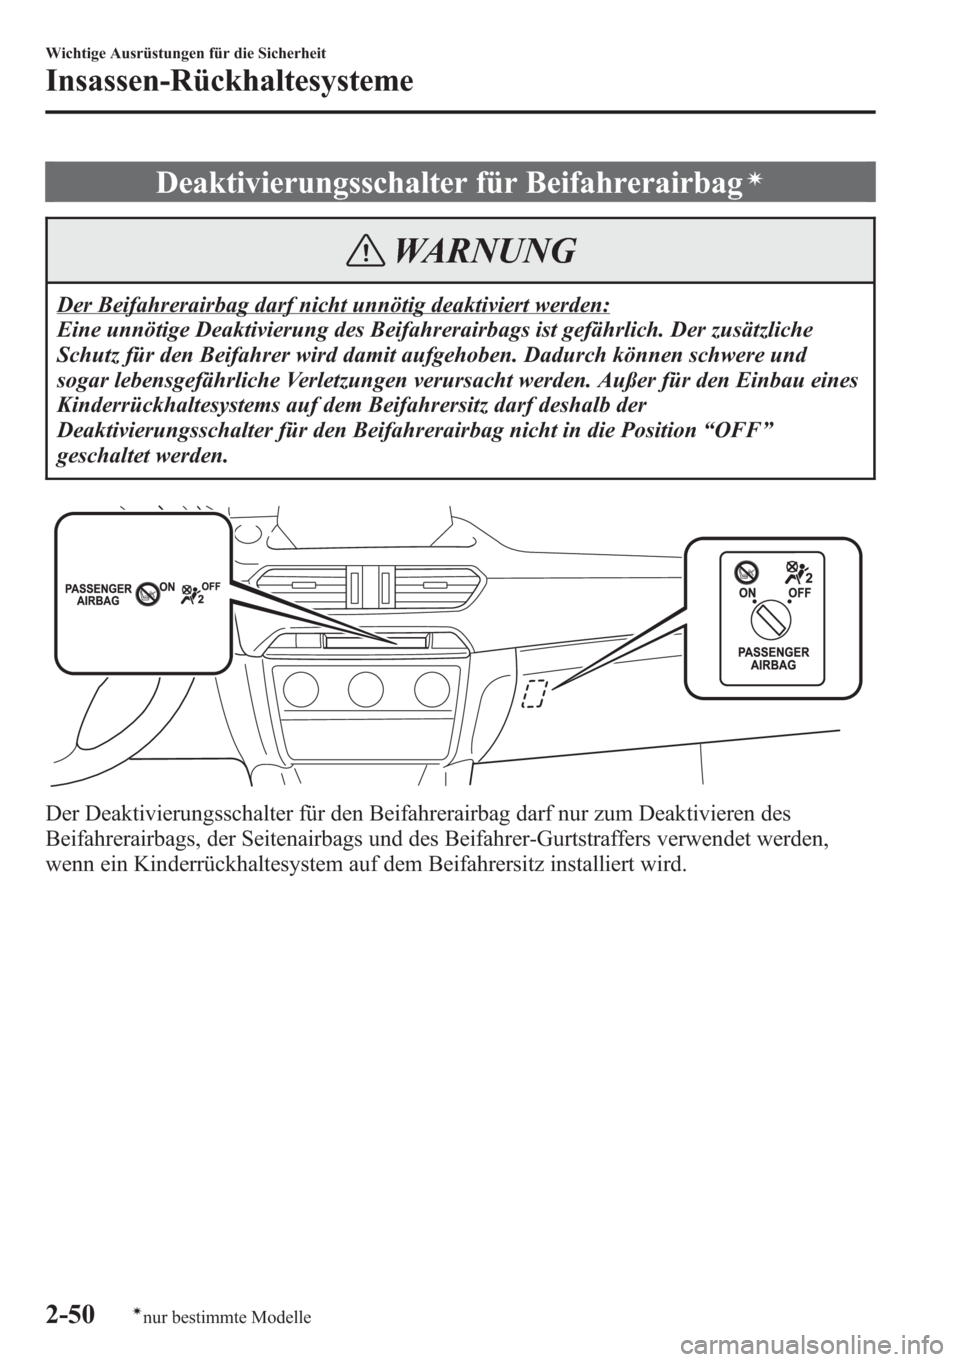 MAZDA MODEL 6 2015  Betriebsanleitung (in German) Deaktivierungsschalter für Beifahrerairbagí
WARNUNG
Der Beifahrerairbag darf nicht unnötig deaktiviert werden:
Eine unnötige Deaktivierung des Beifahrerairbags ist gefährlich. Der zusätzliche
Sc